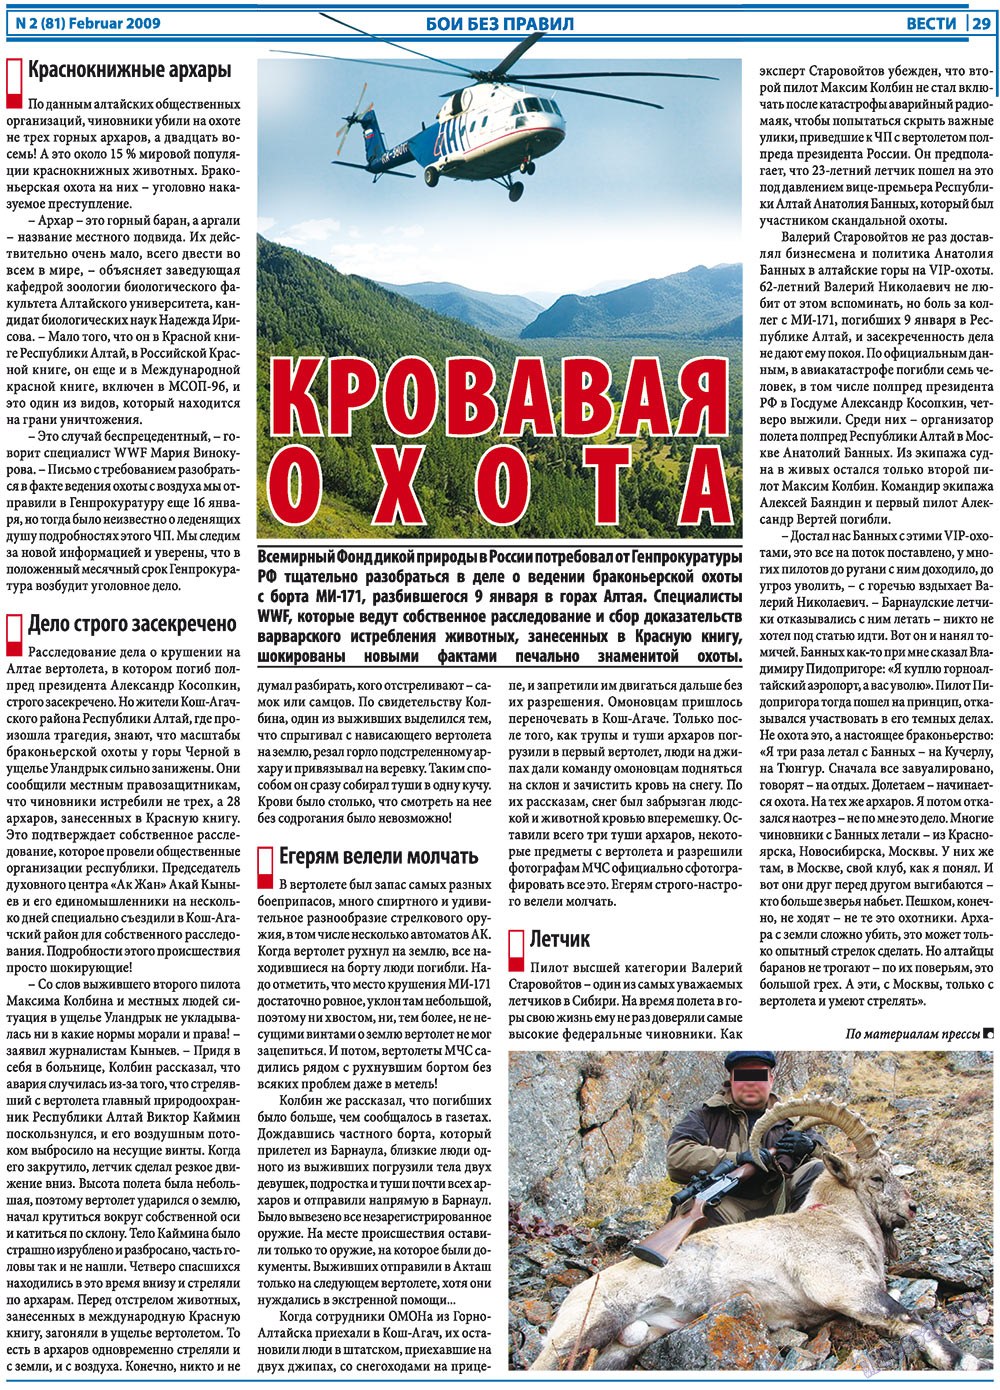 Вести, газета. 2009 №2 стр.29